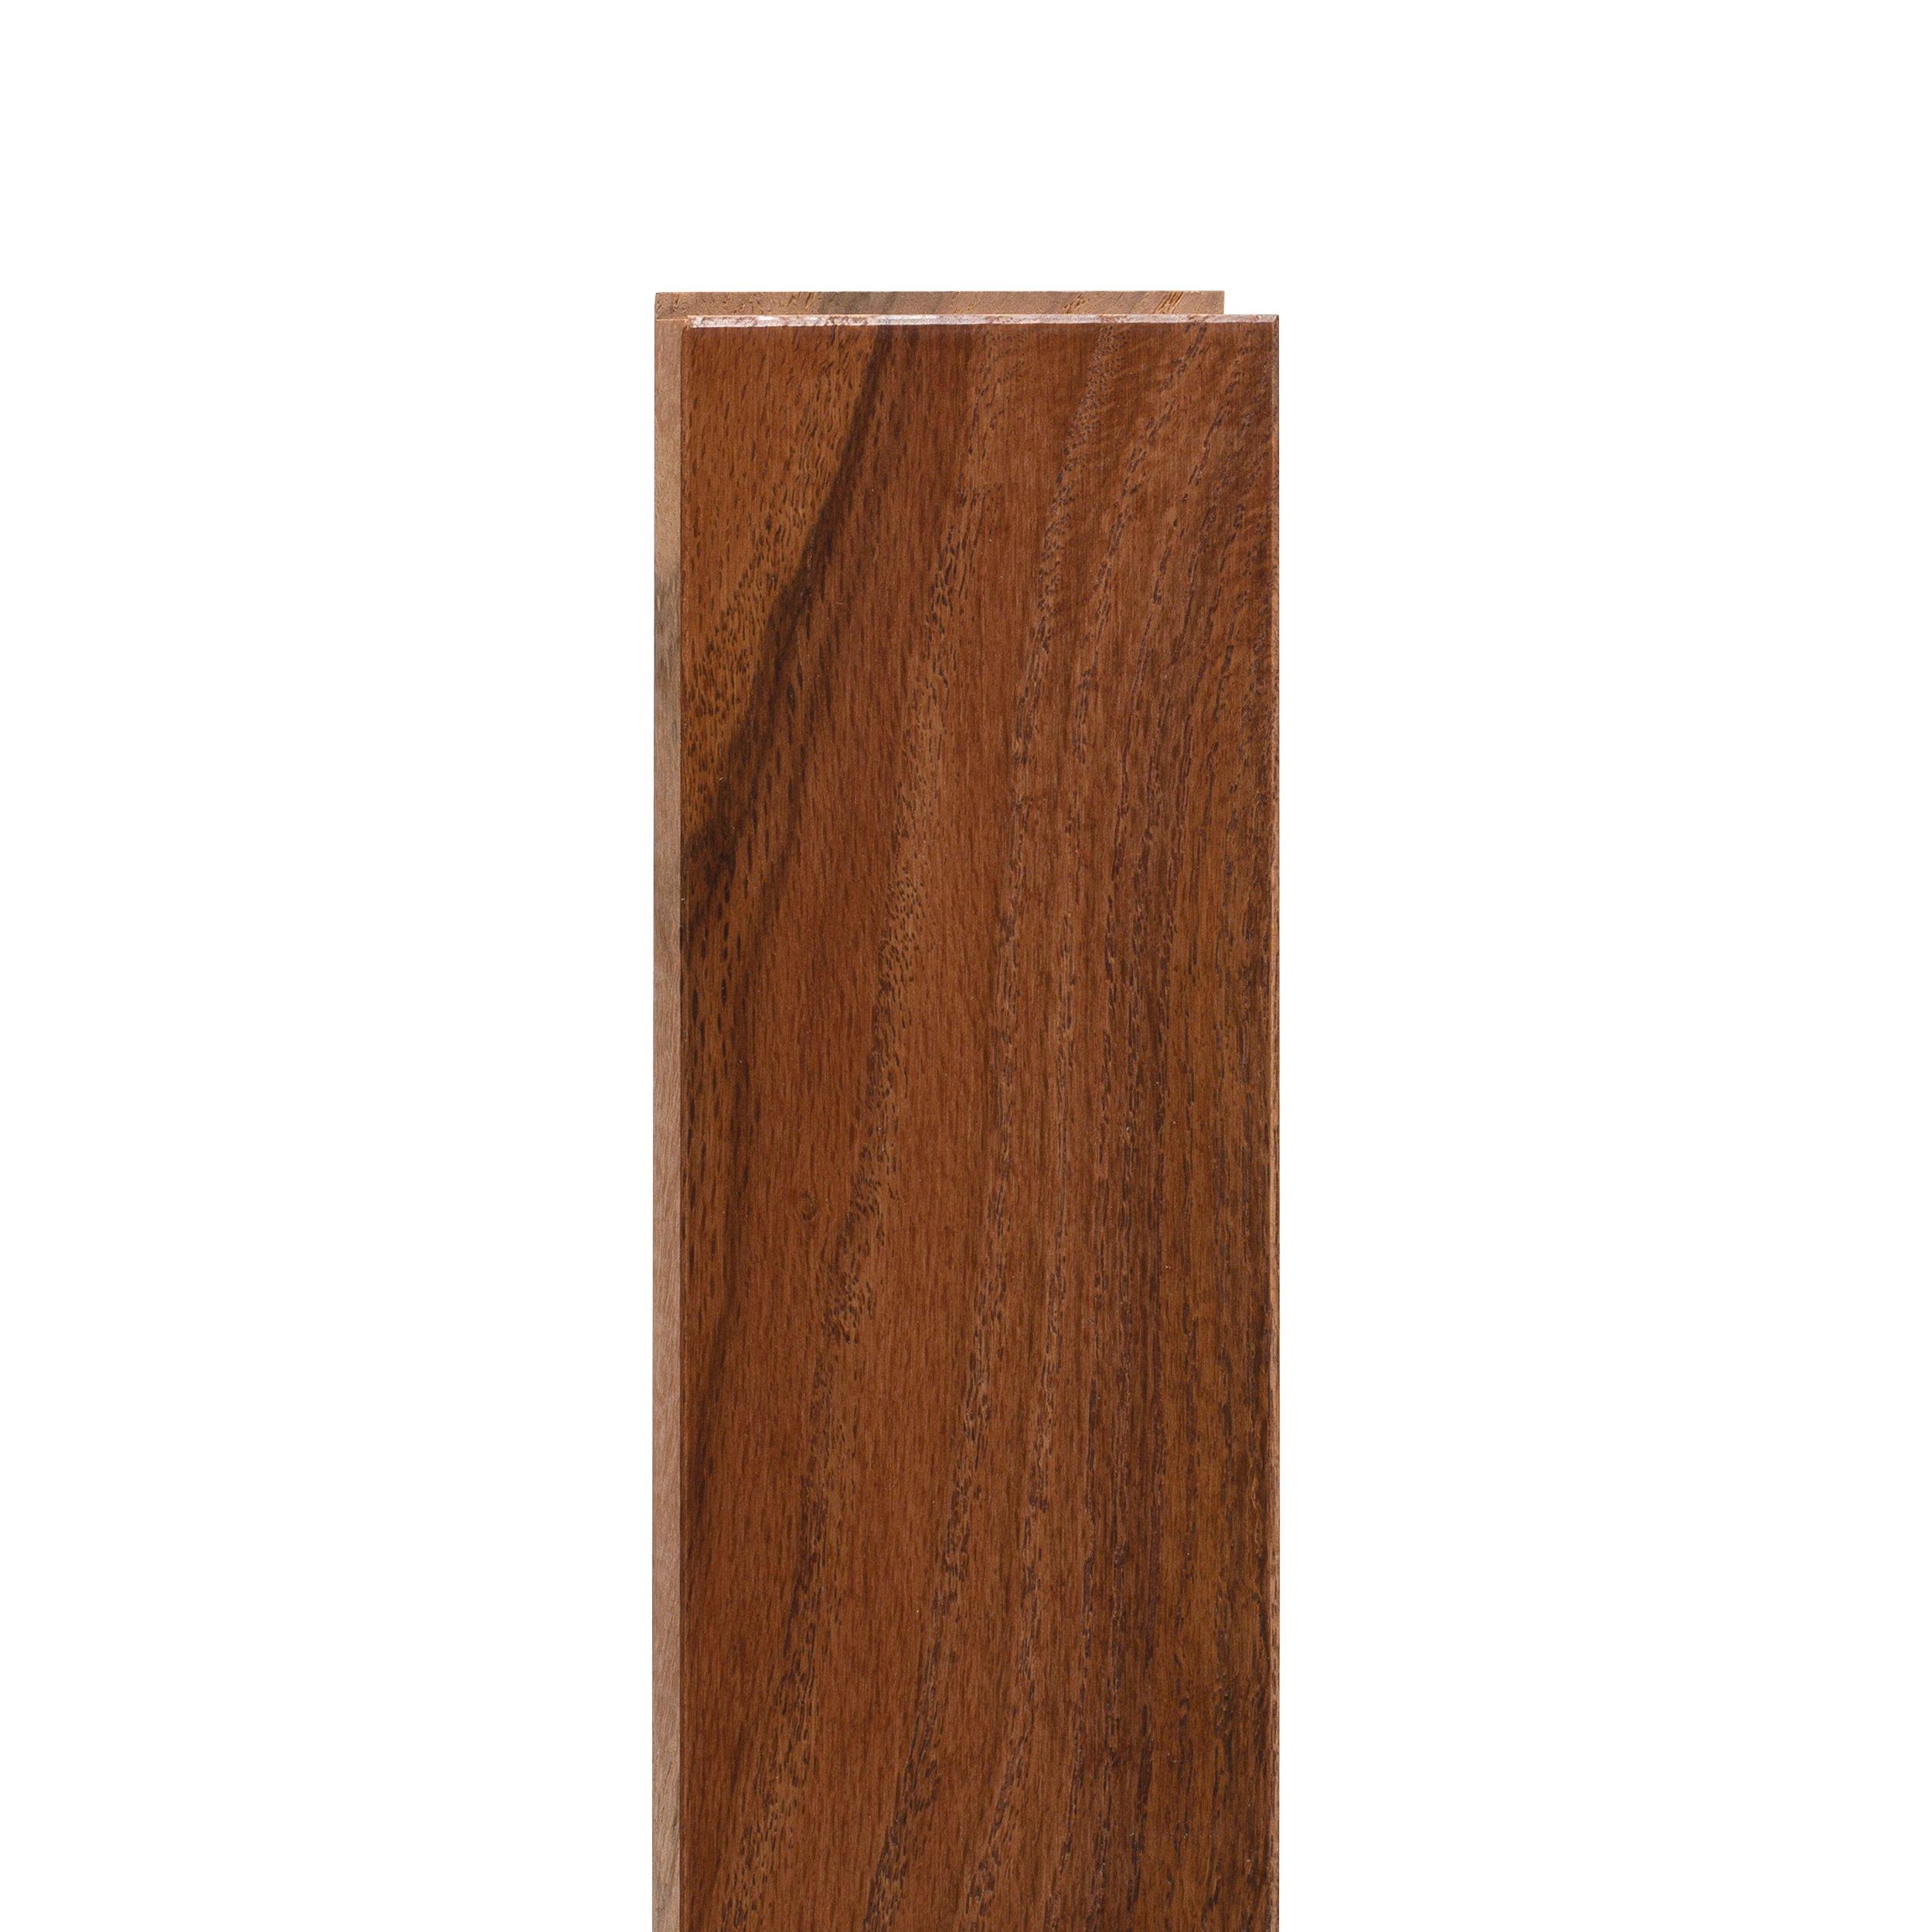 Gunstock Red Oak Smooth Solid Hardwood